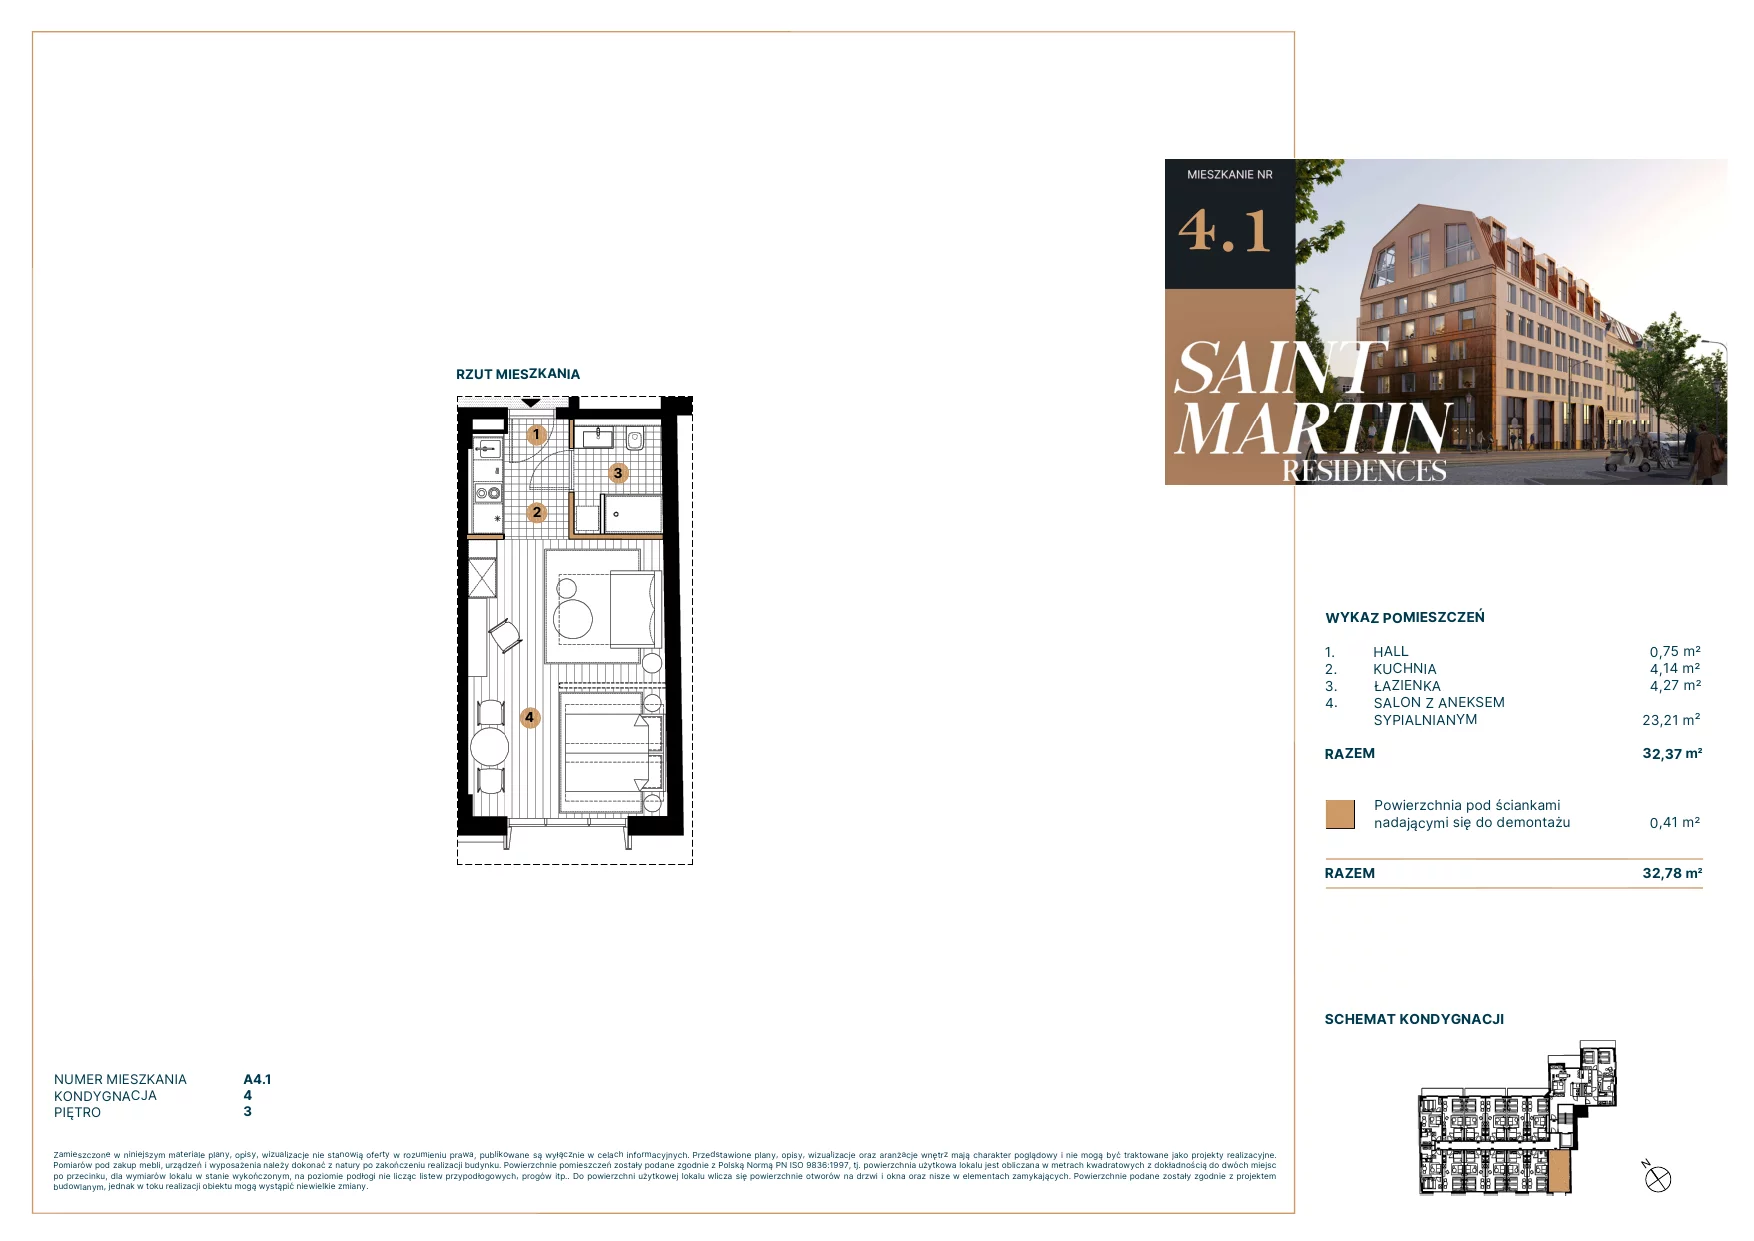 Mieszkanie 32,78 m², piętro 3, oferta nr A4.1, Saint Martin Residences II, Poznań, Stare Miasto, Stare Miasto, ul. Podgórna 7